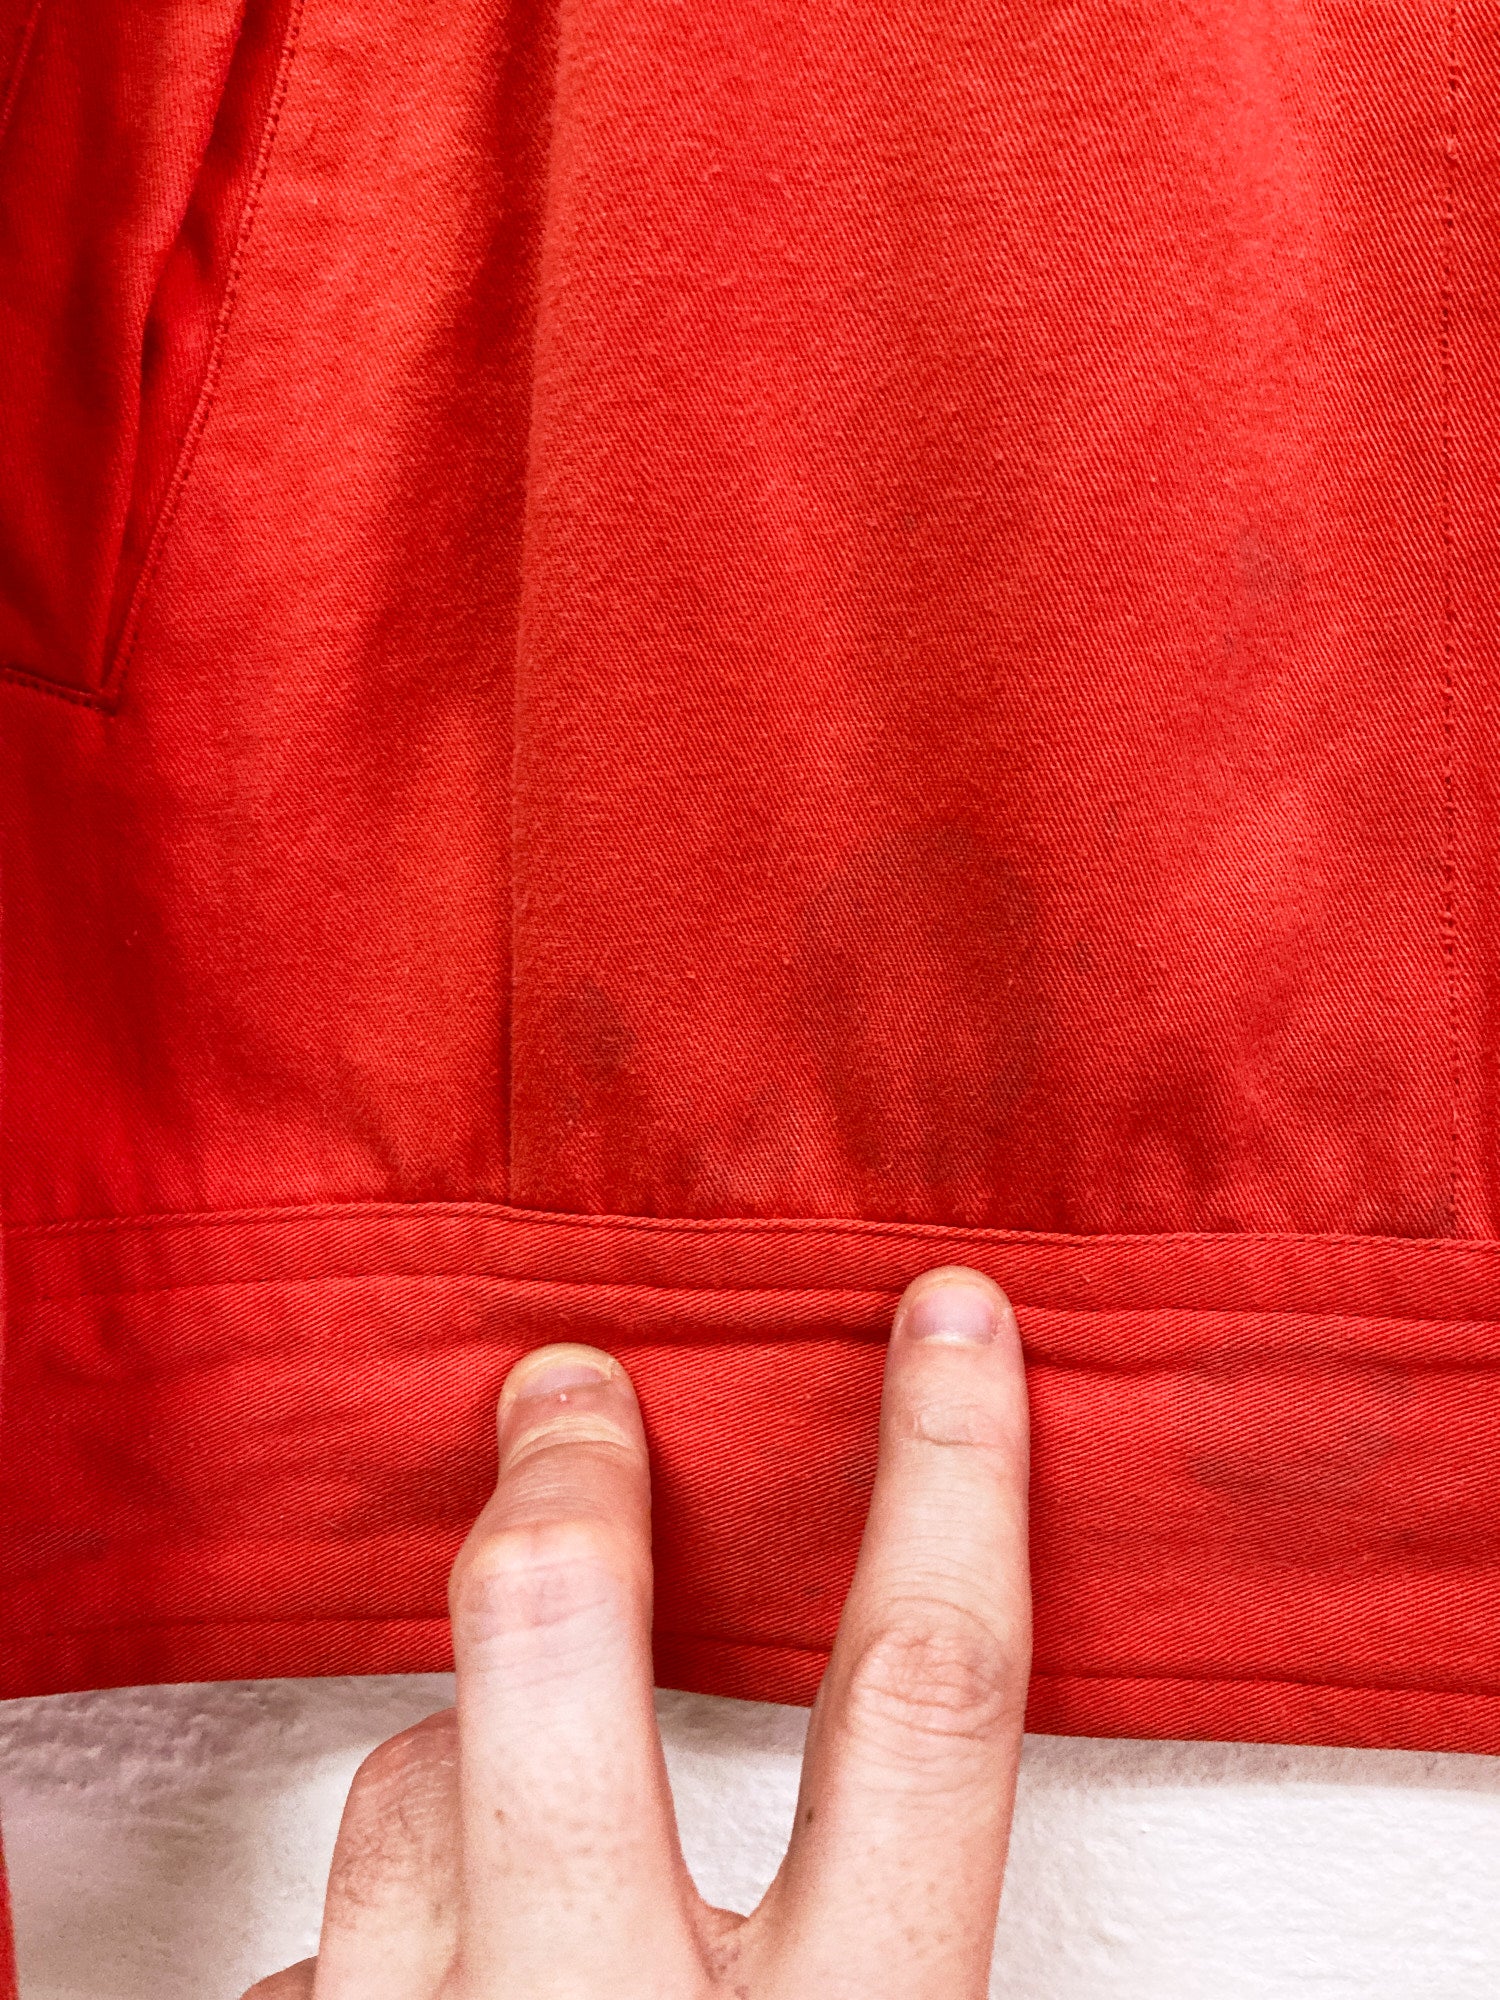 Comme des Garcons Homme Plus 1990 faded orange-red cotton work jacket - M L